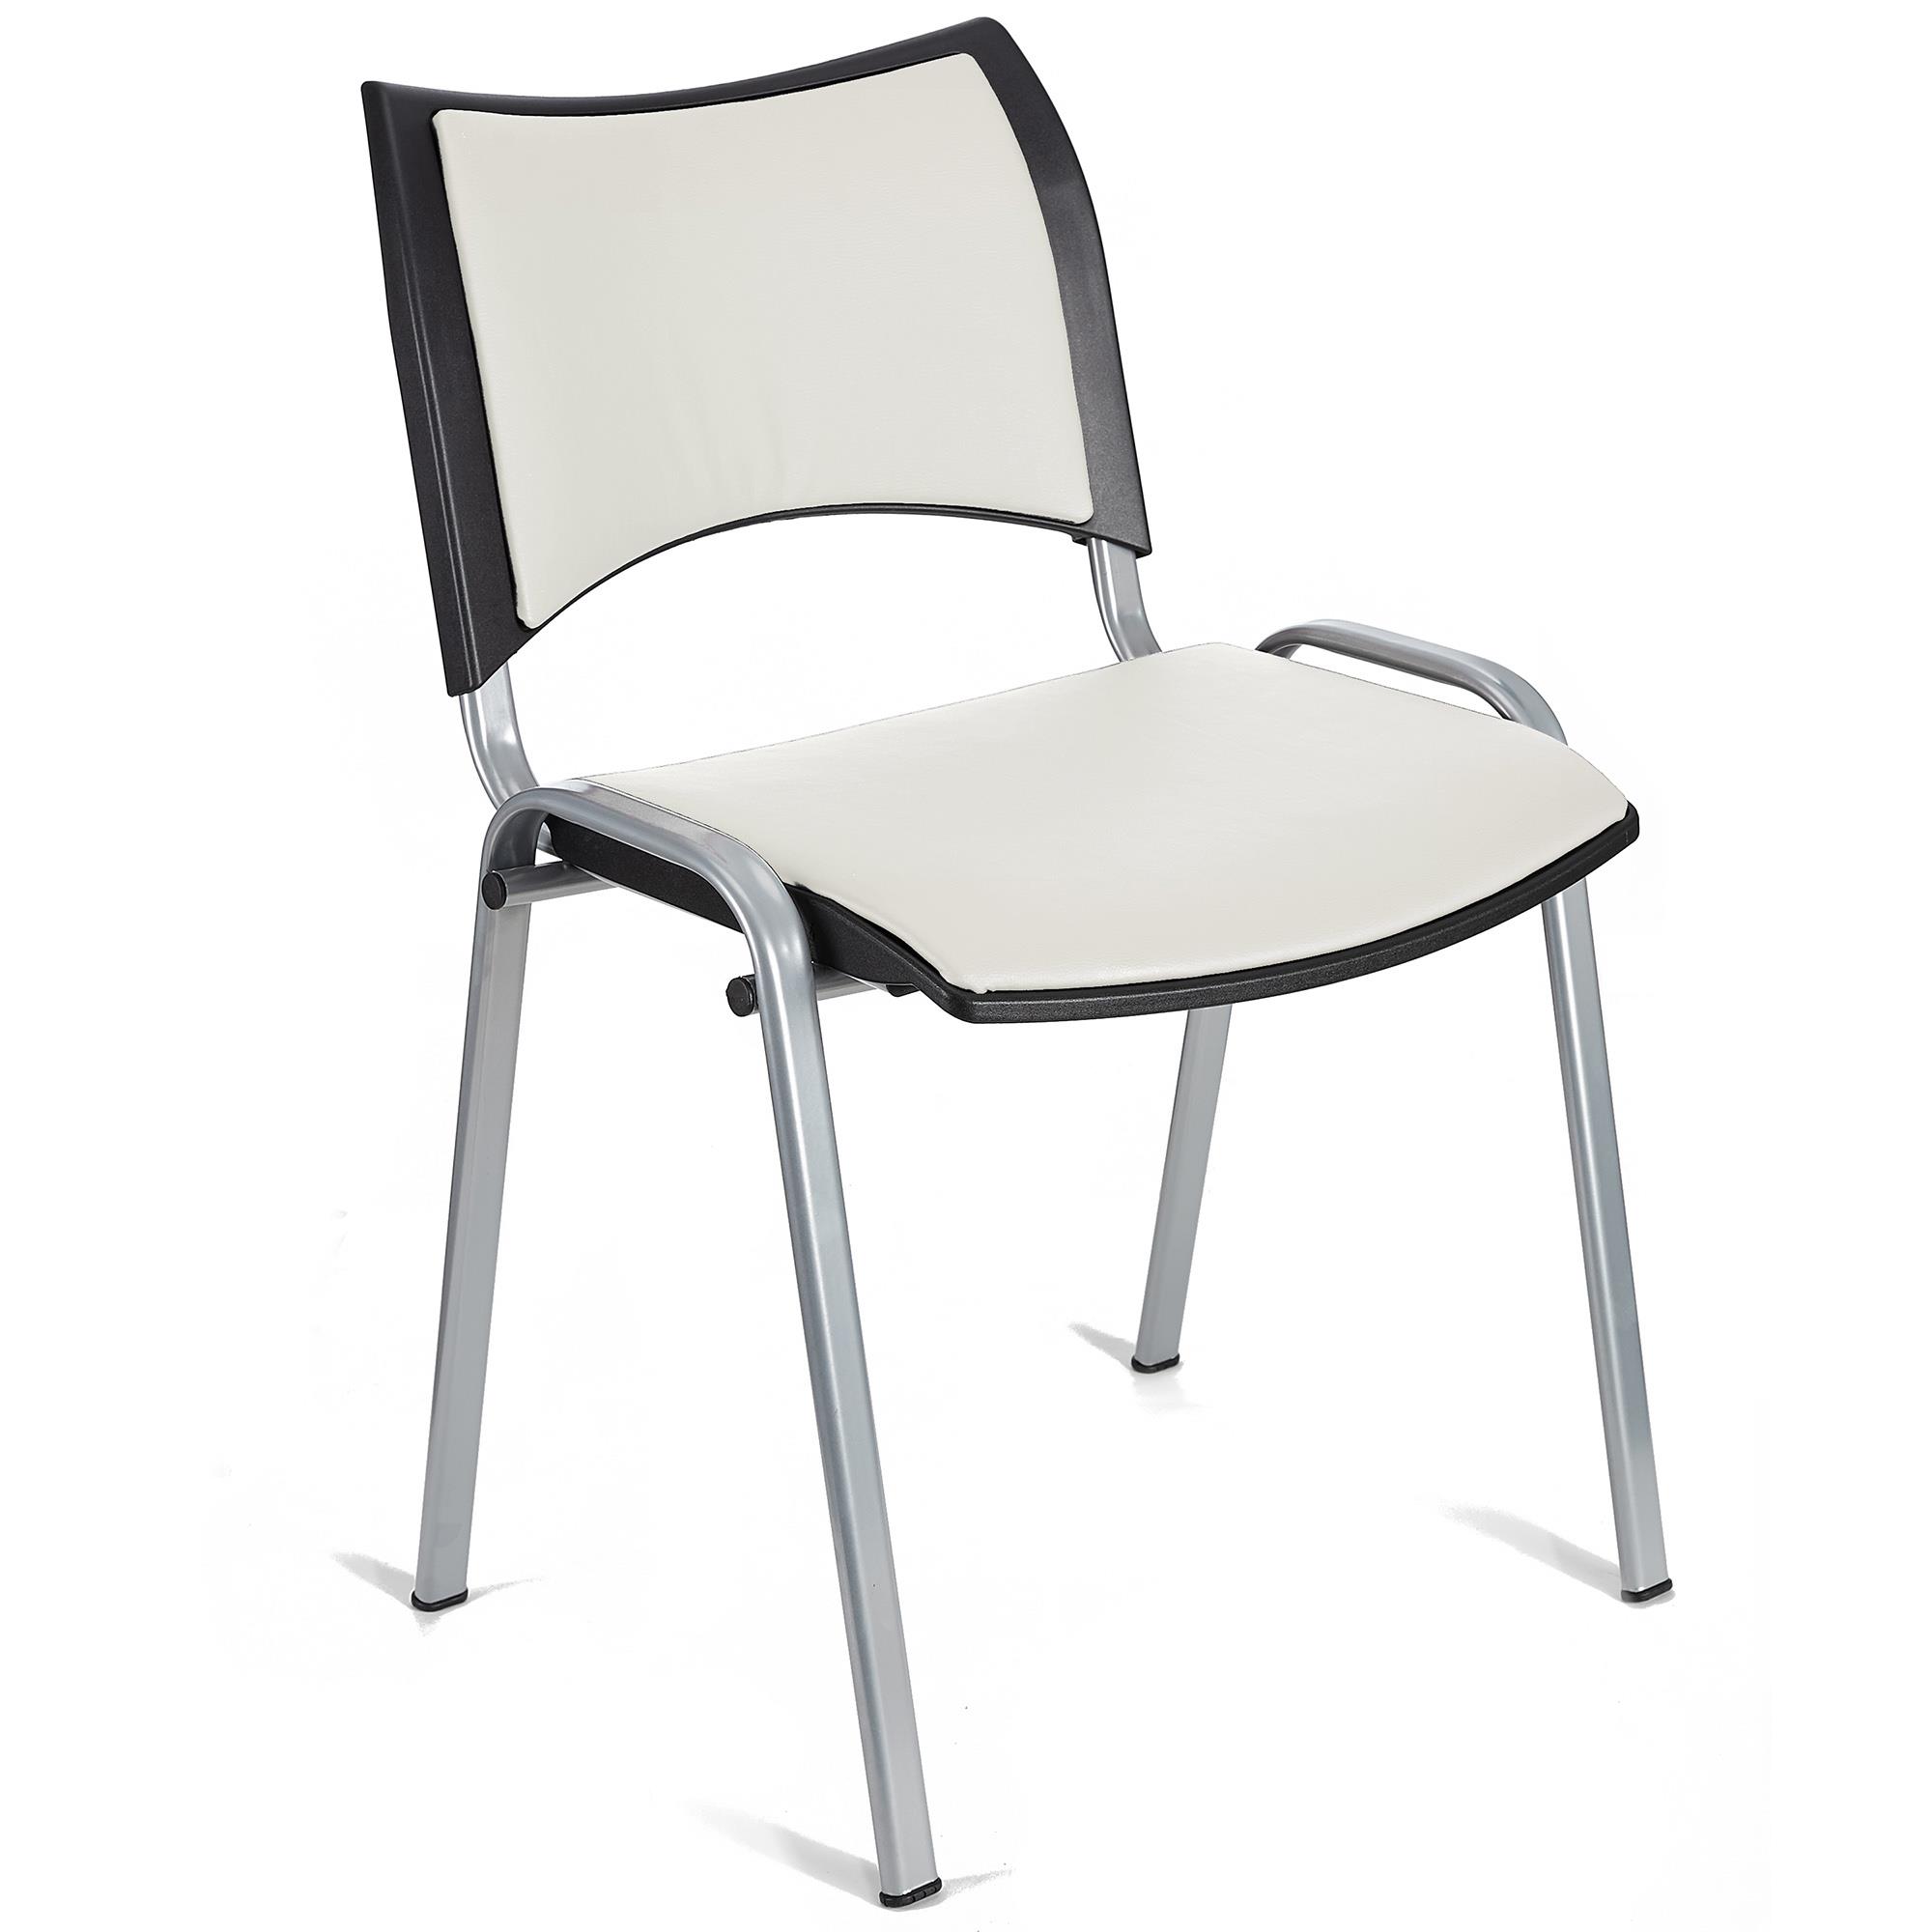 Cadeira de Visita ROMEL PELE, Prática e Empilhável, Pernas Cinza, Branco